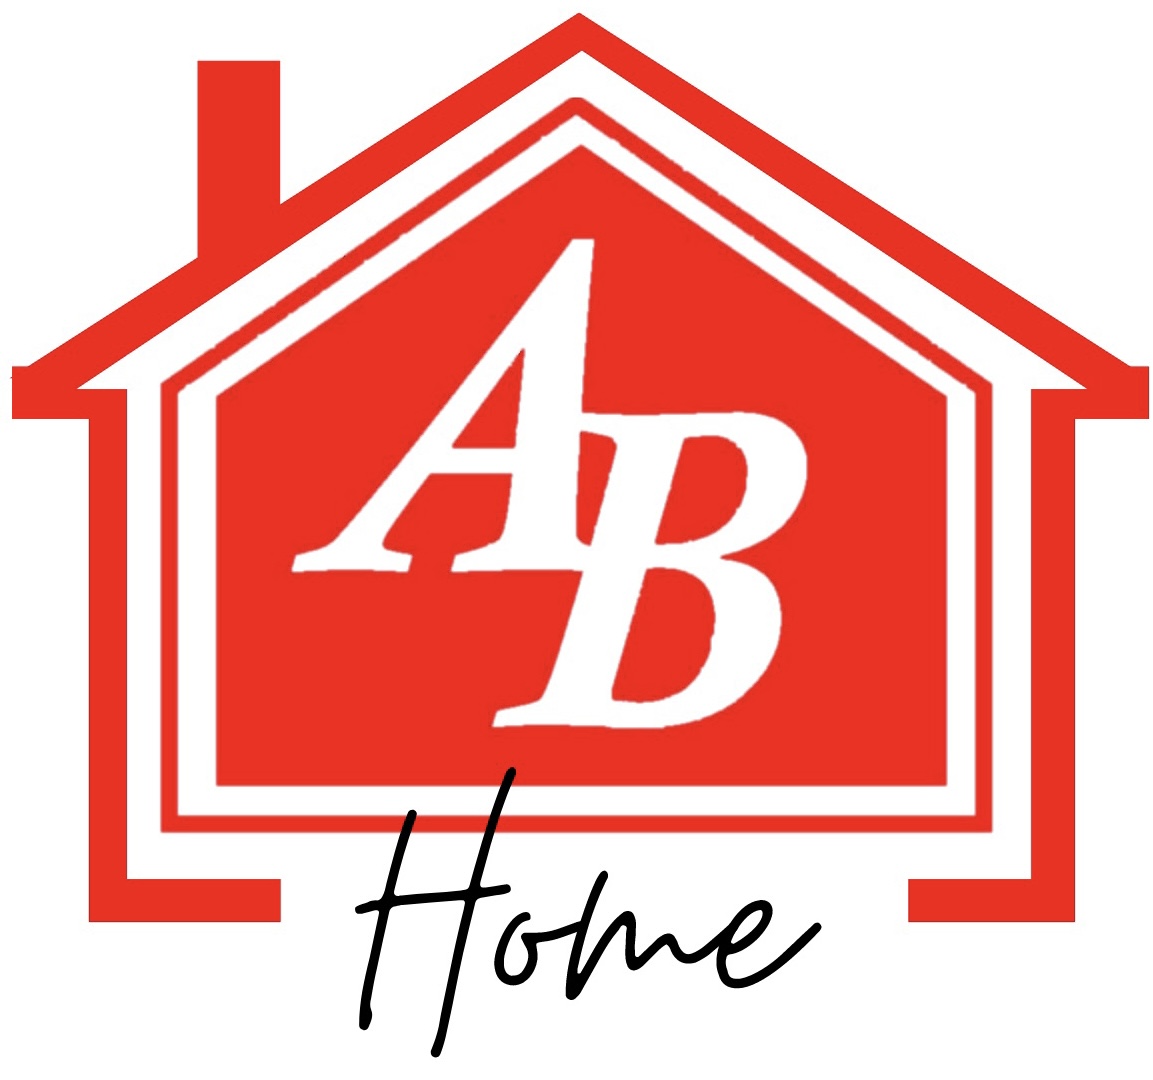 A&B Home